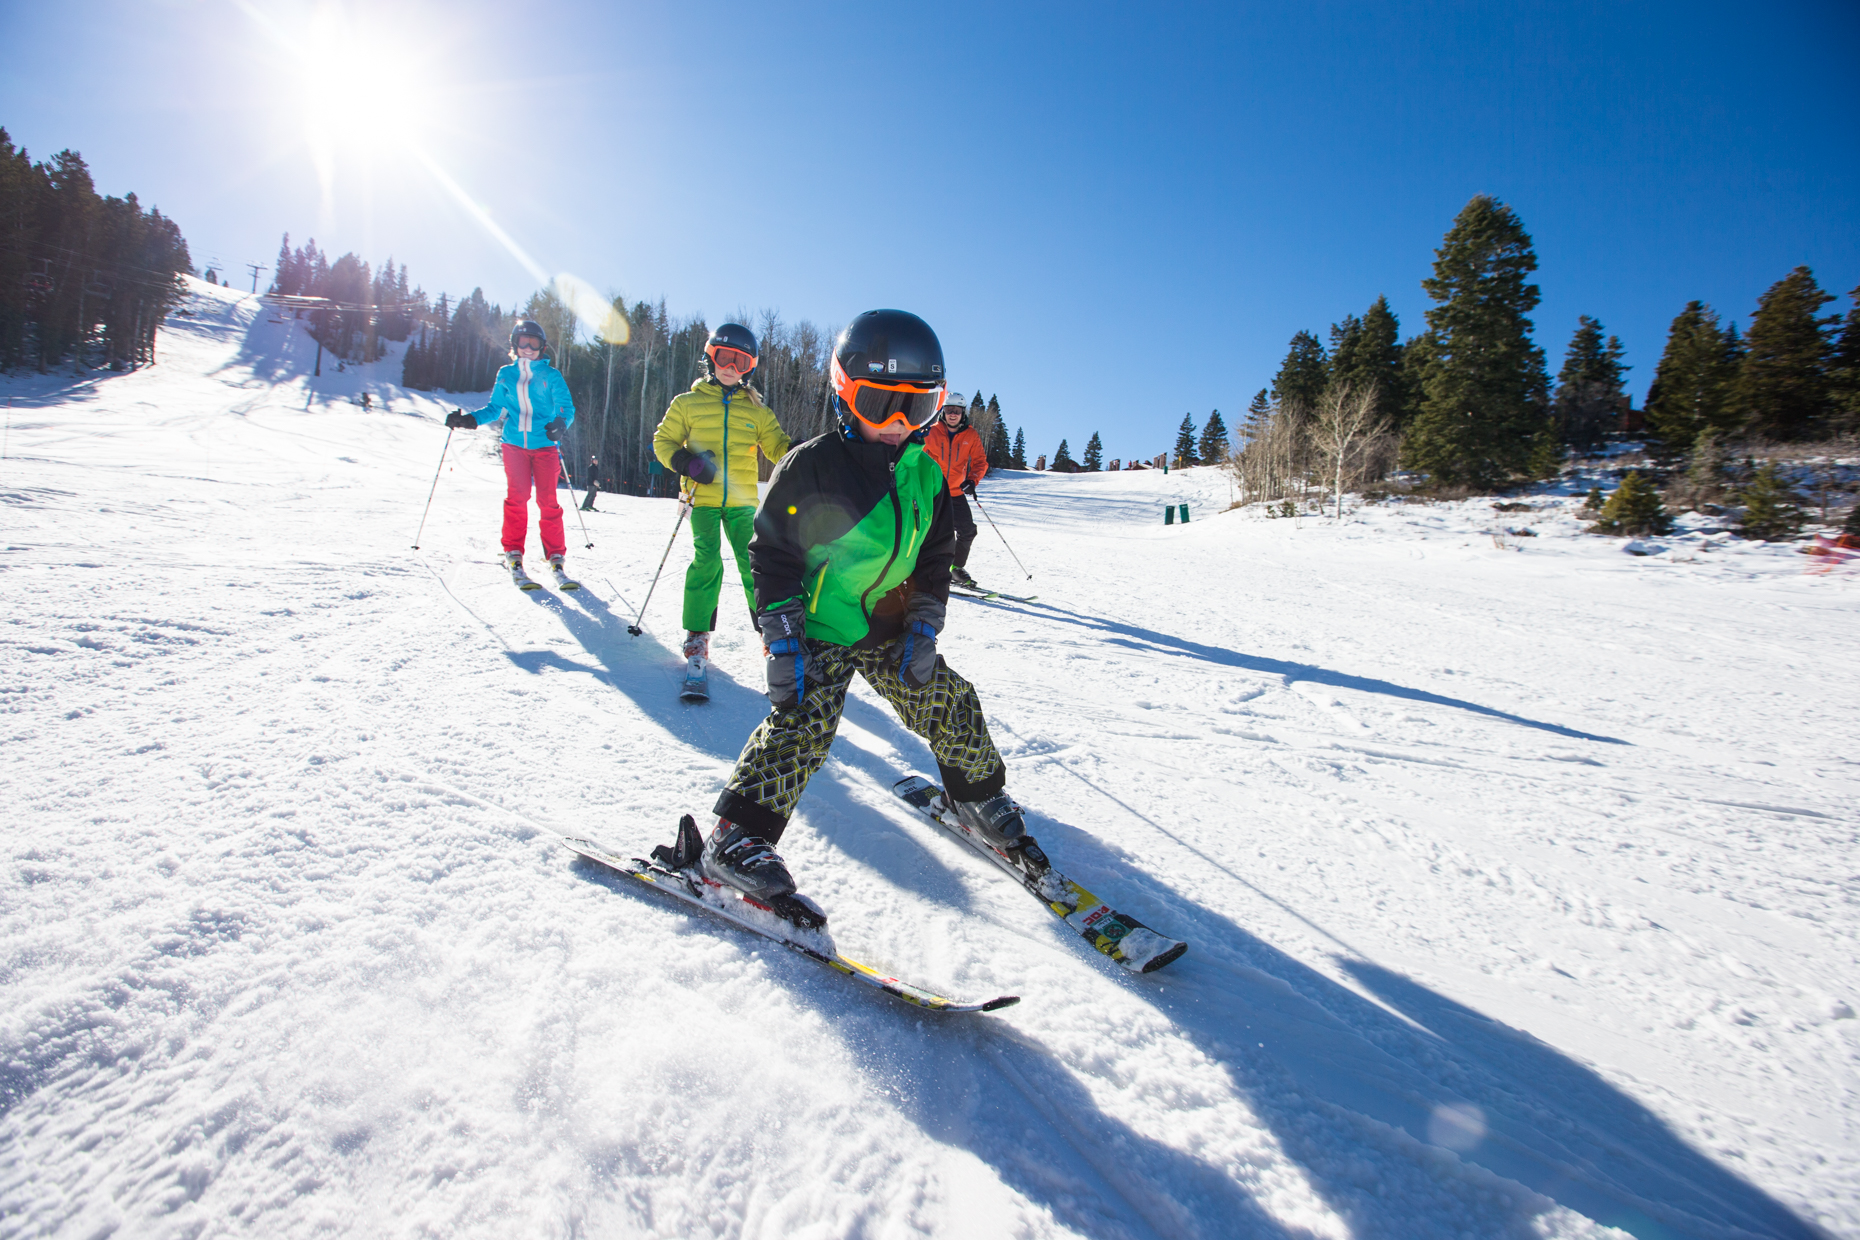 Ski Butlers Ski Rental Delivery